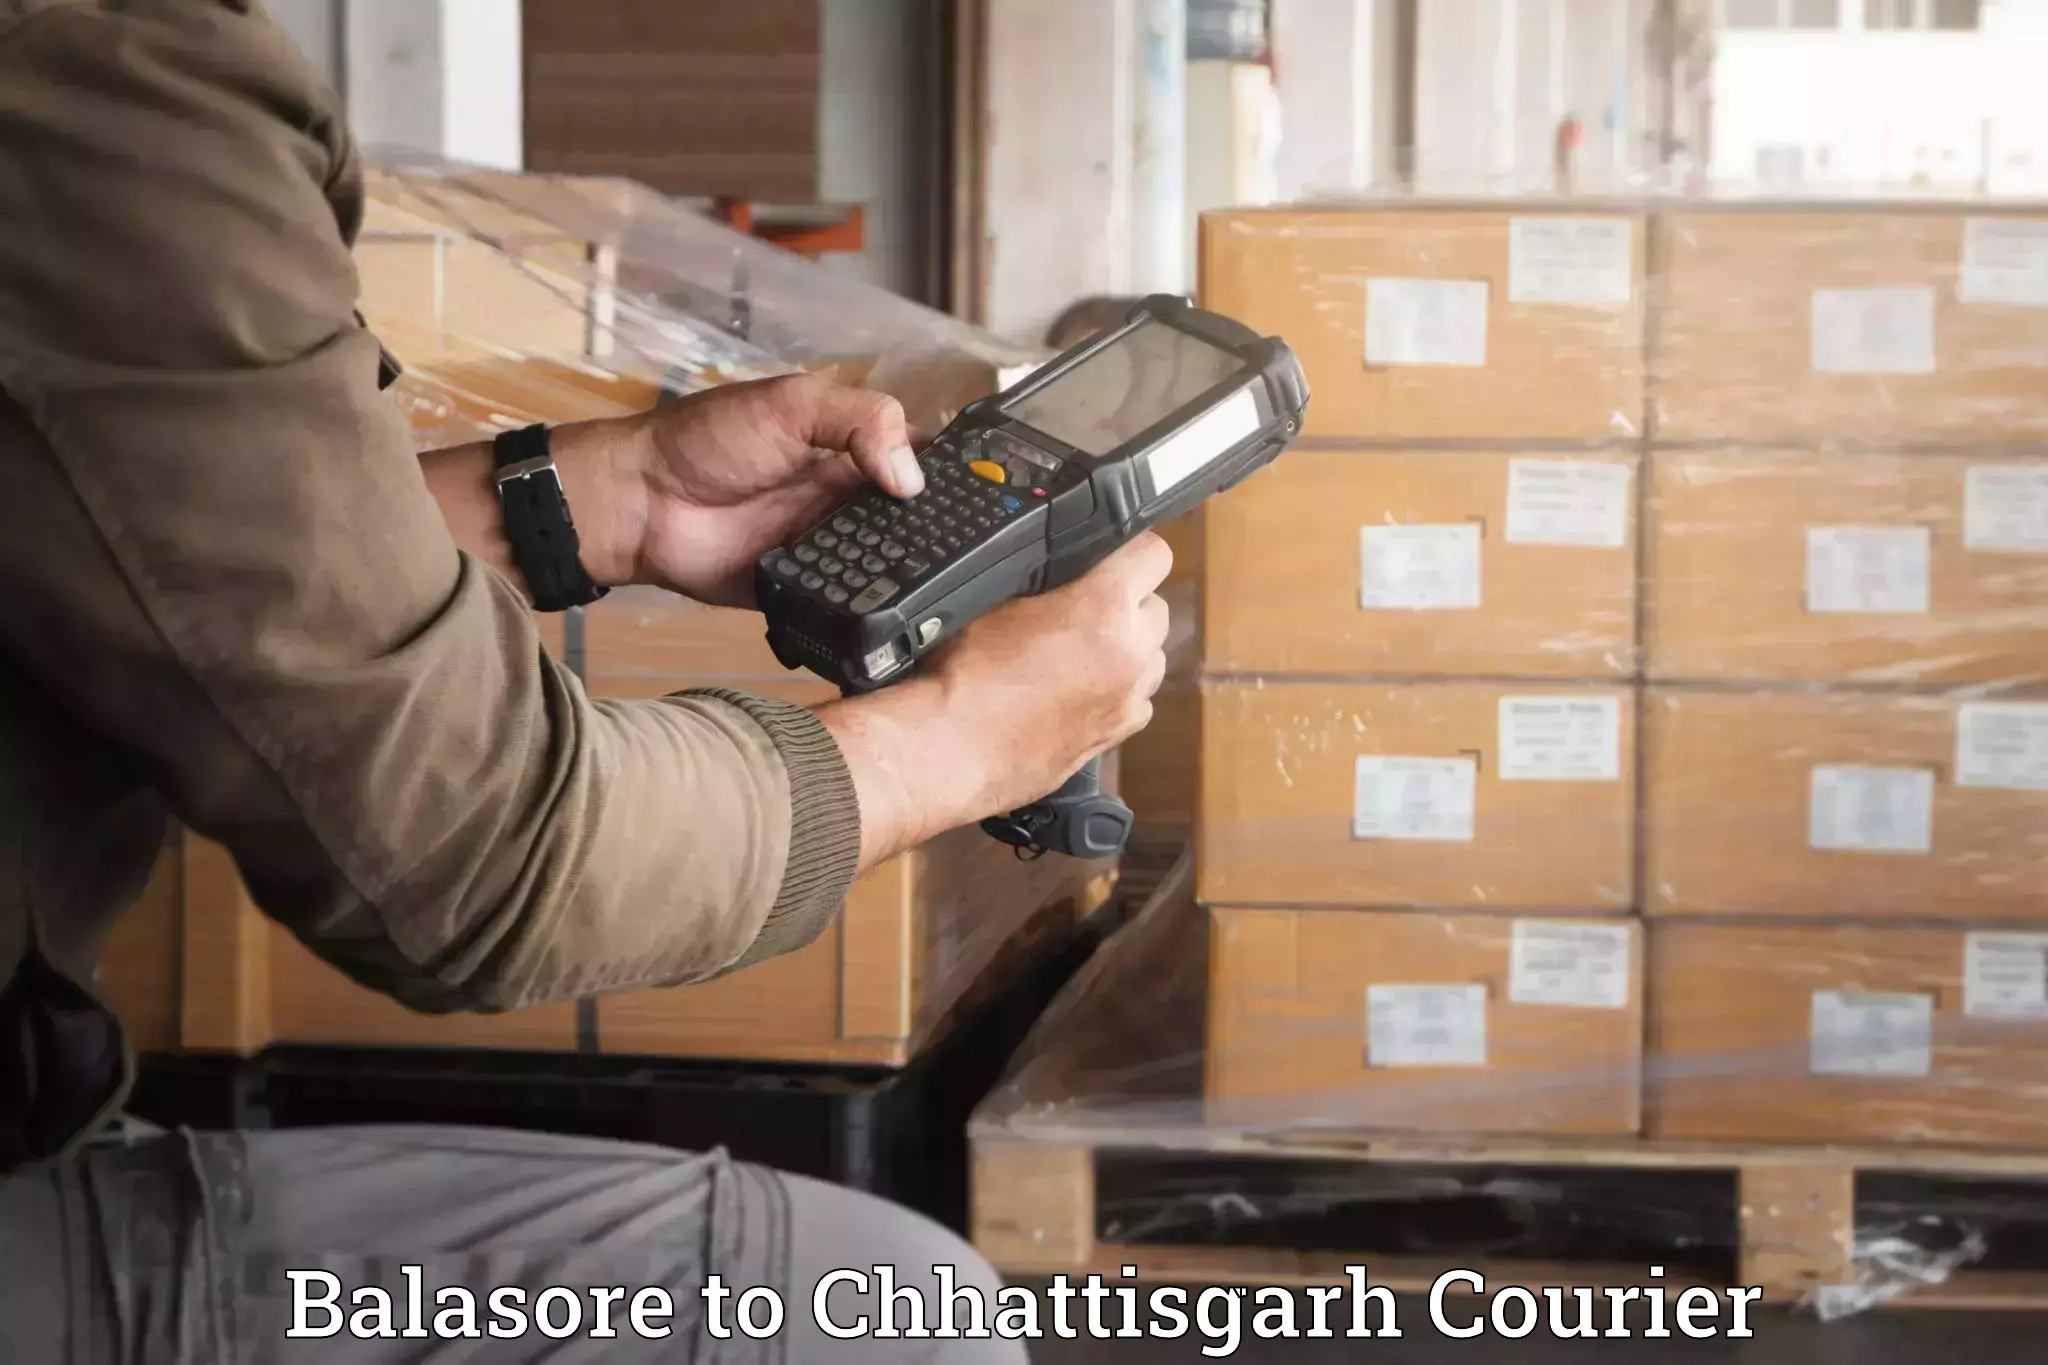 Expert household movers Balasore to Raigarh Chhattisgarh